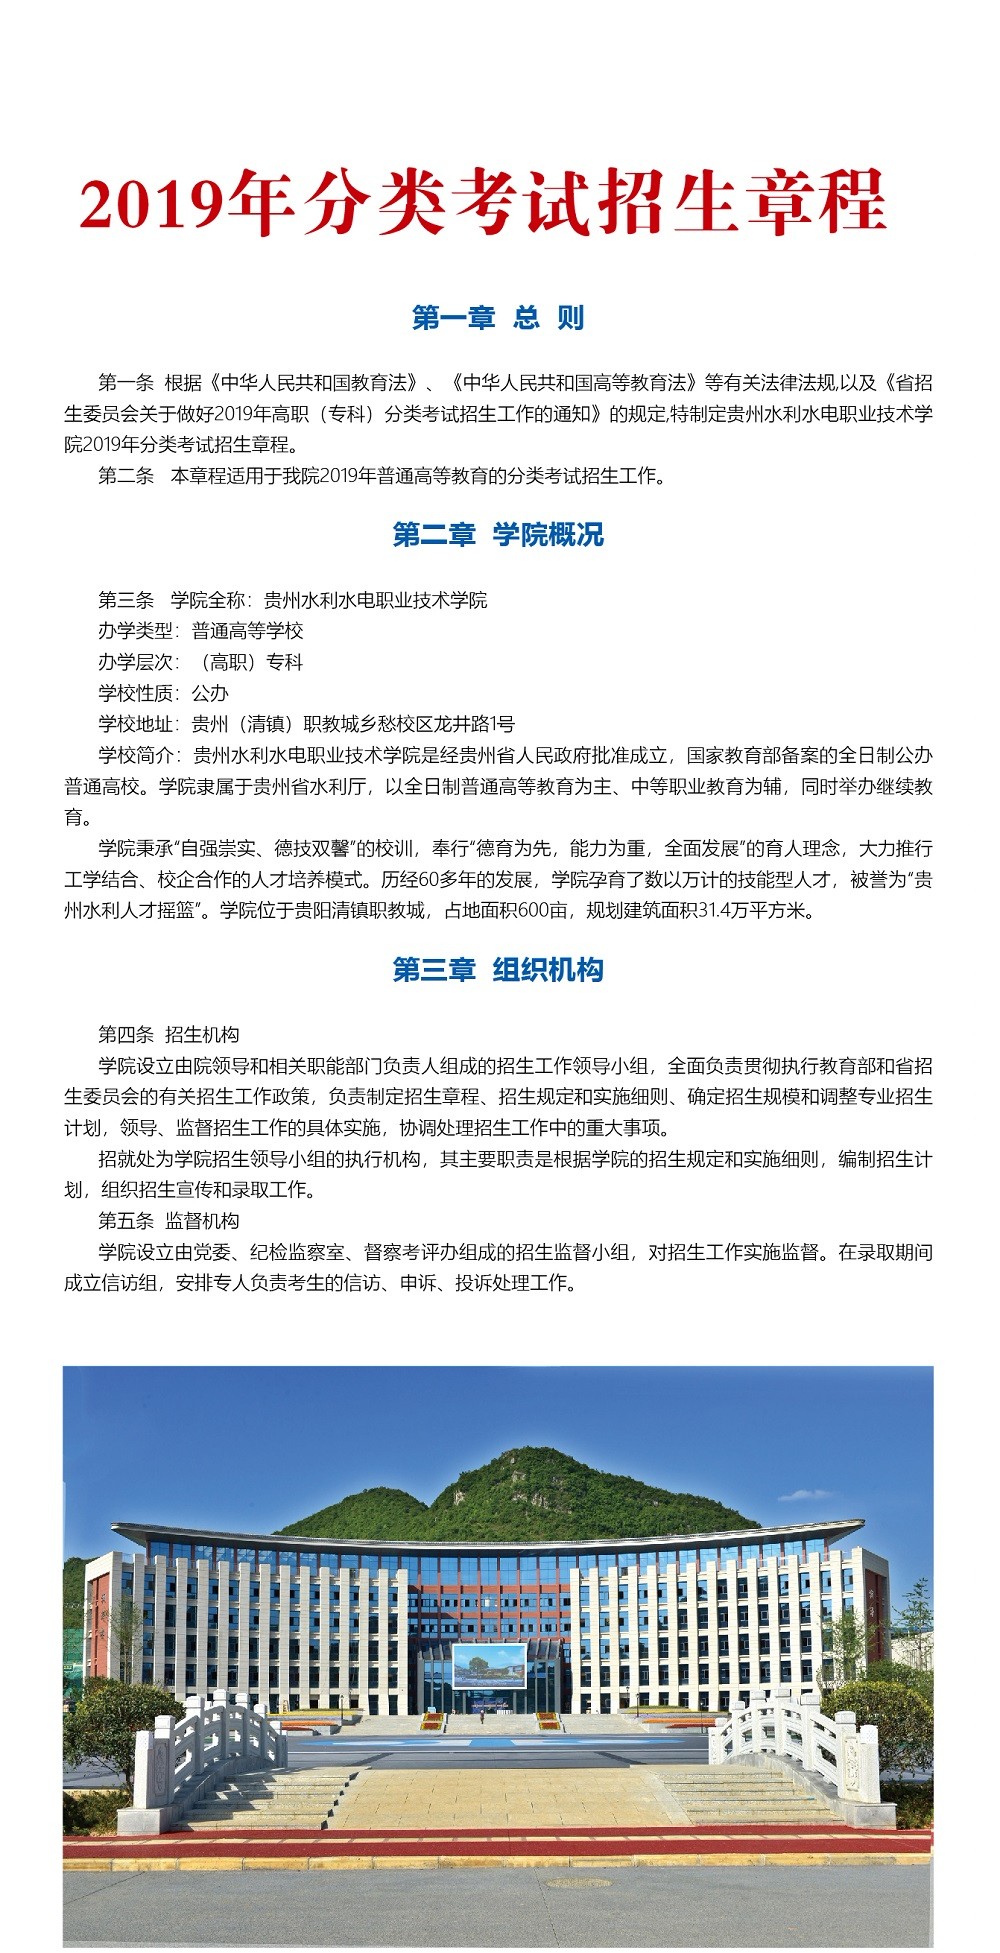 贵州水利水电职业技术学院2019年分类考试招生简章